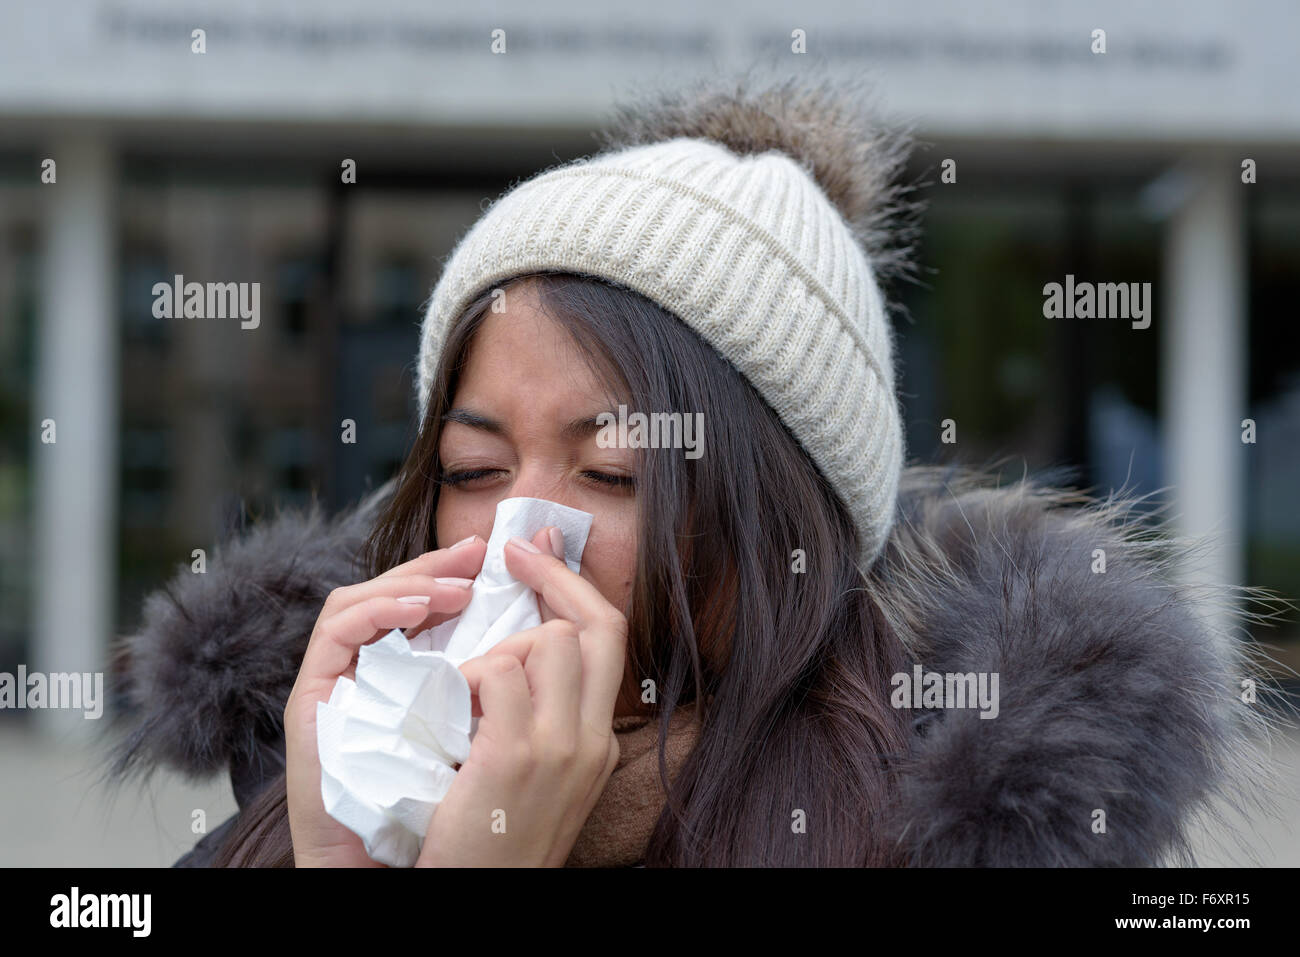 Junge Frau mit einer saisonalen Winterkälte oder Grippe trägt einen pelzigen Jacke und ihre Nase auf ein weißes Taschentuch o Strickmütze Stockfoto